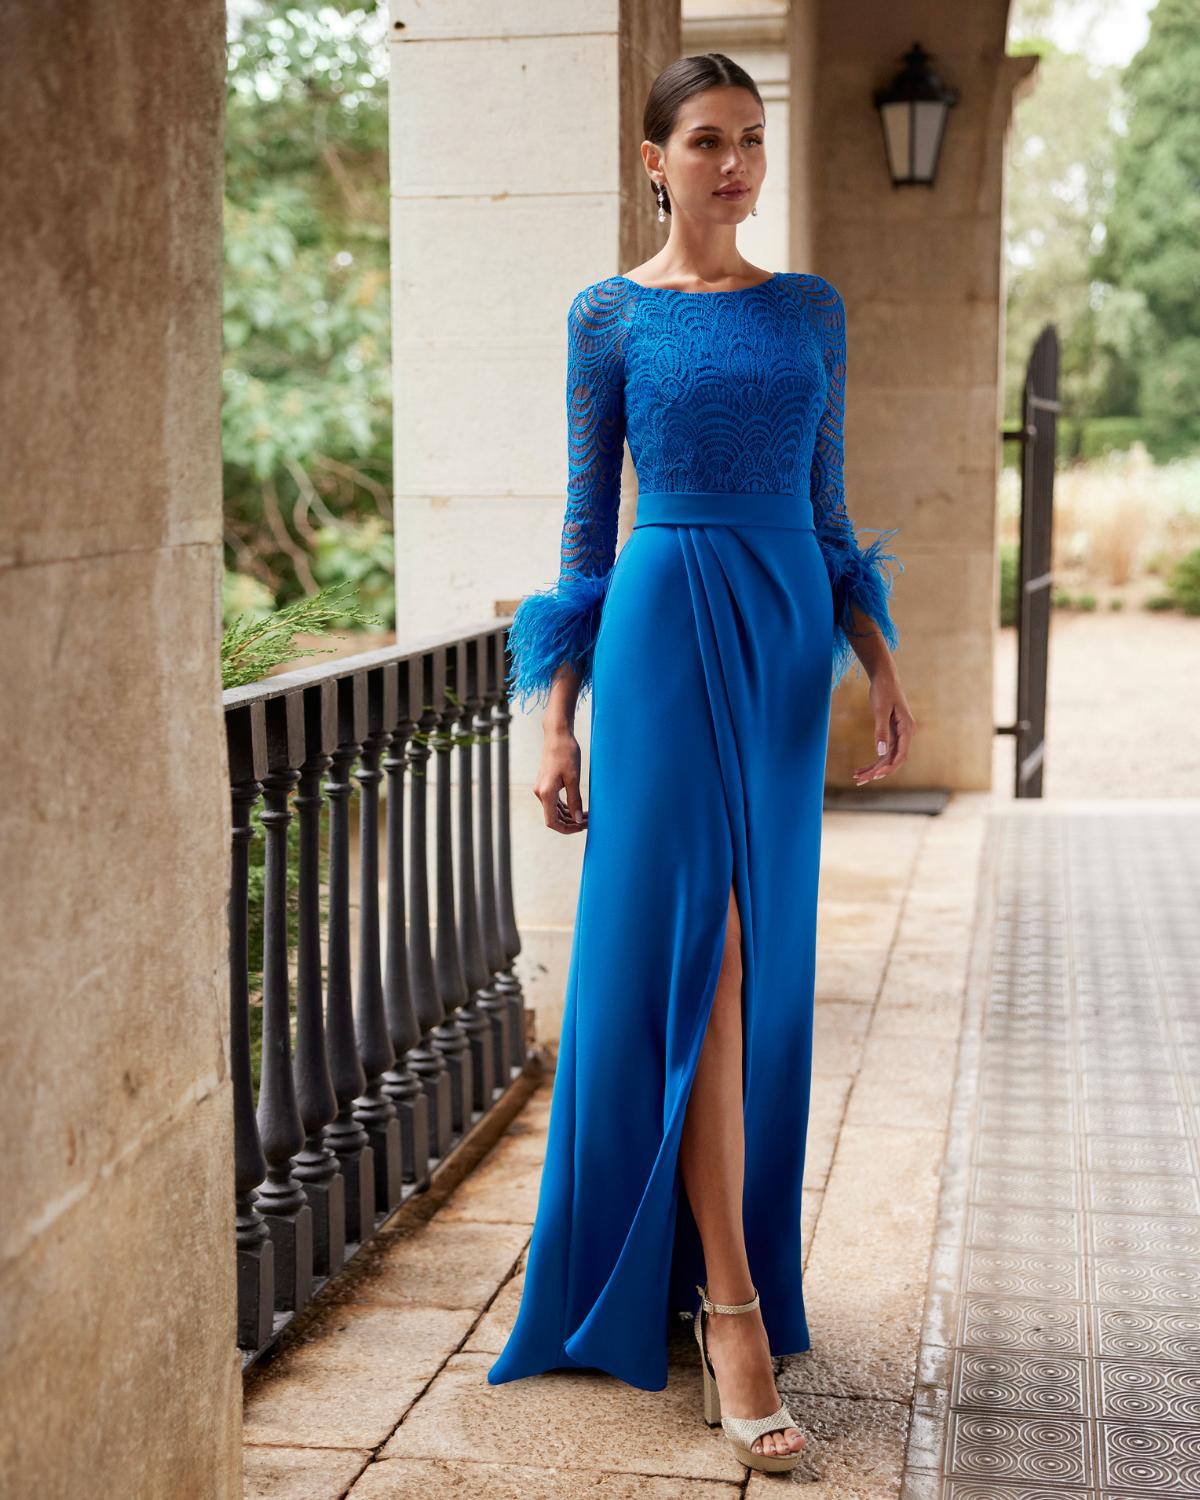 Madrina elegant sencilla: vestido de fiesta en azul klein con plumas en las mangas